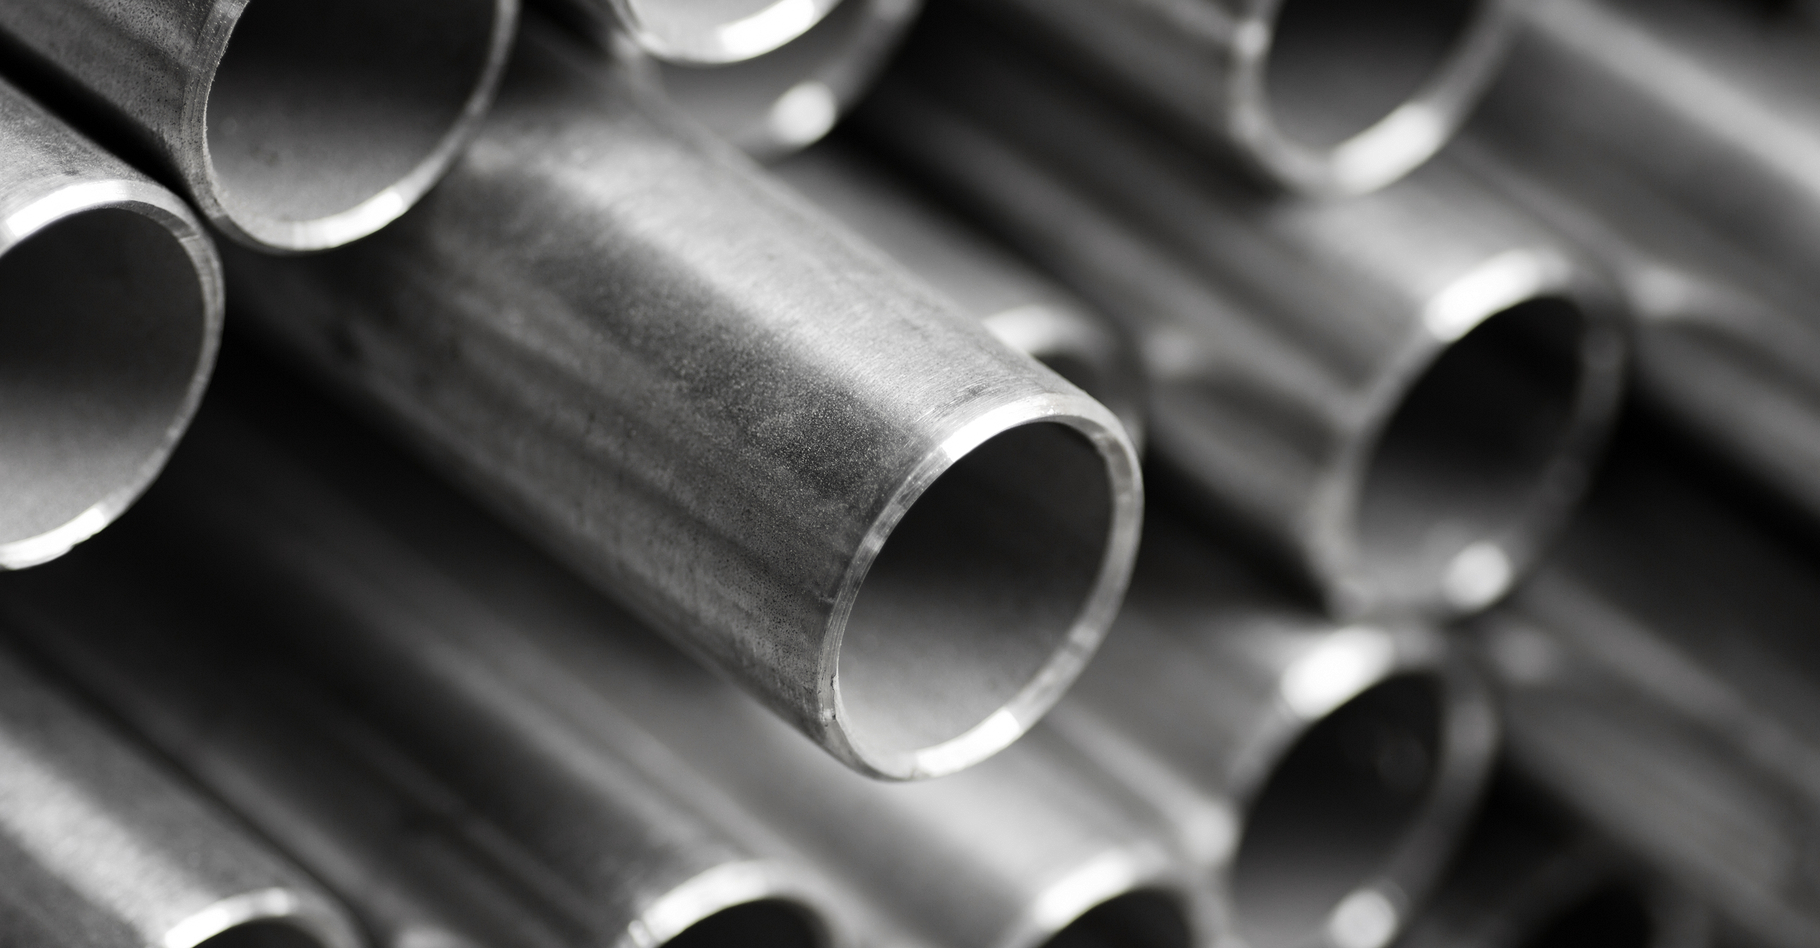 Comment se déroule la fabrication de l’acier ? © AleksWolff, Shutterstock